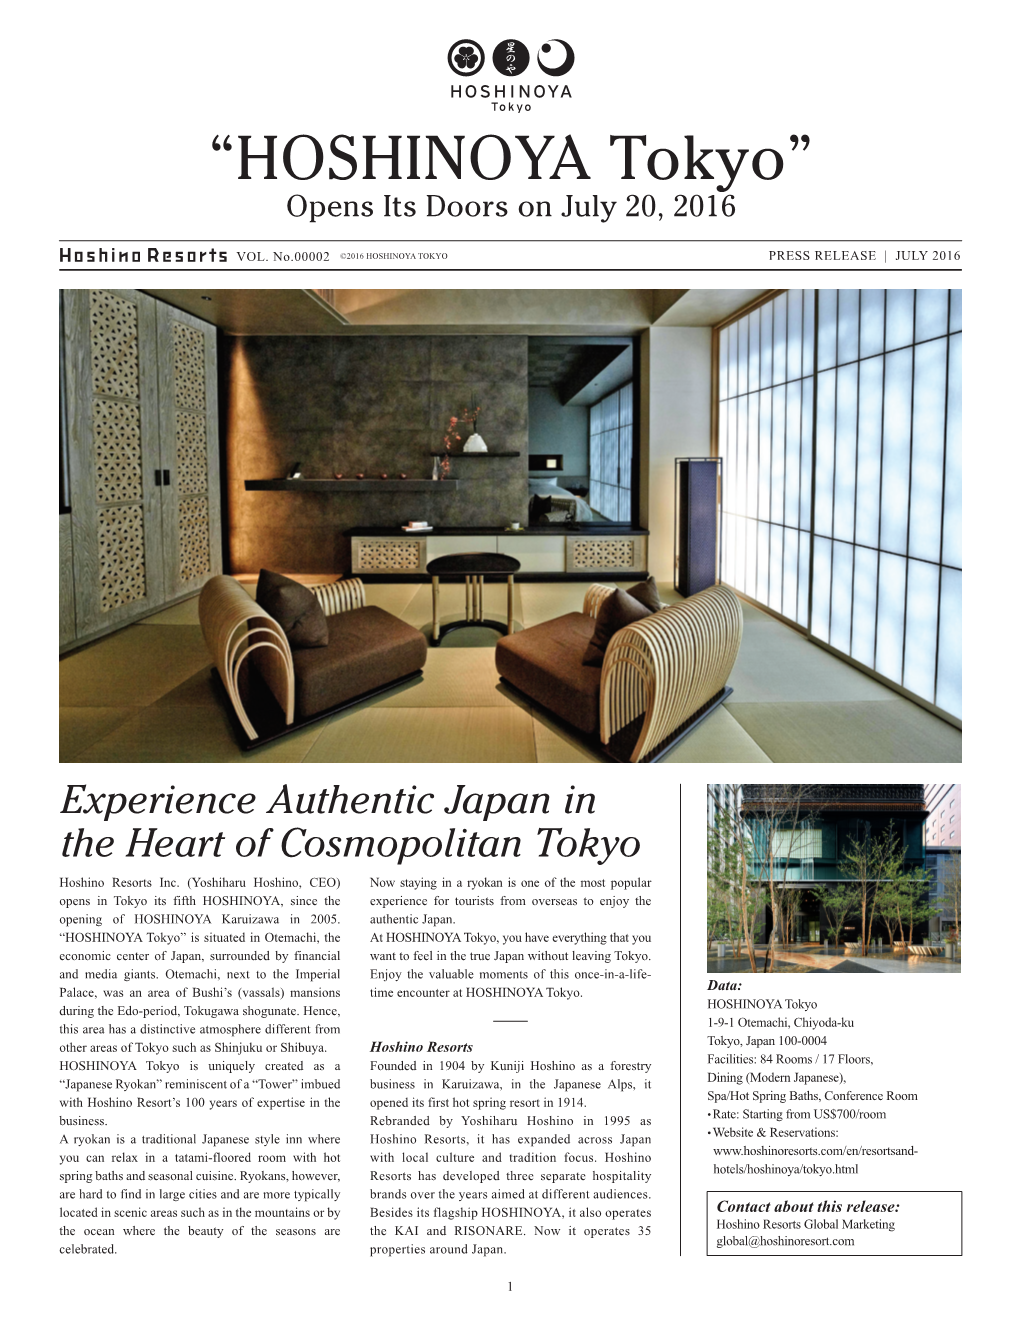 Hoshino Resorts Inc